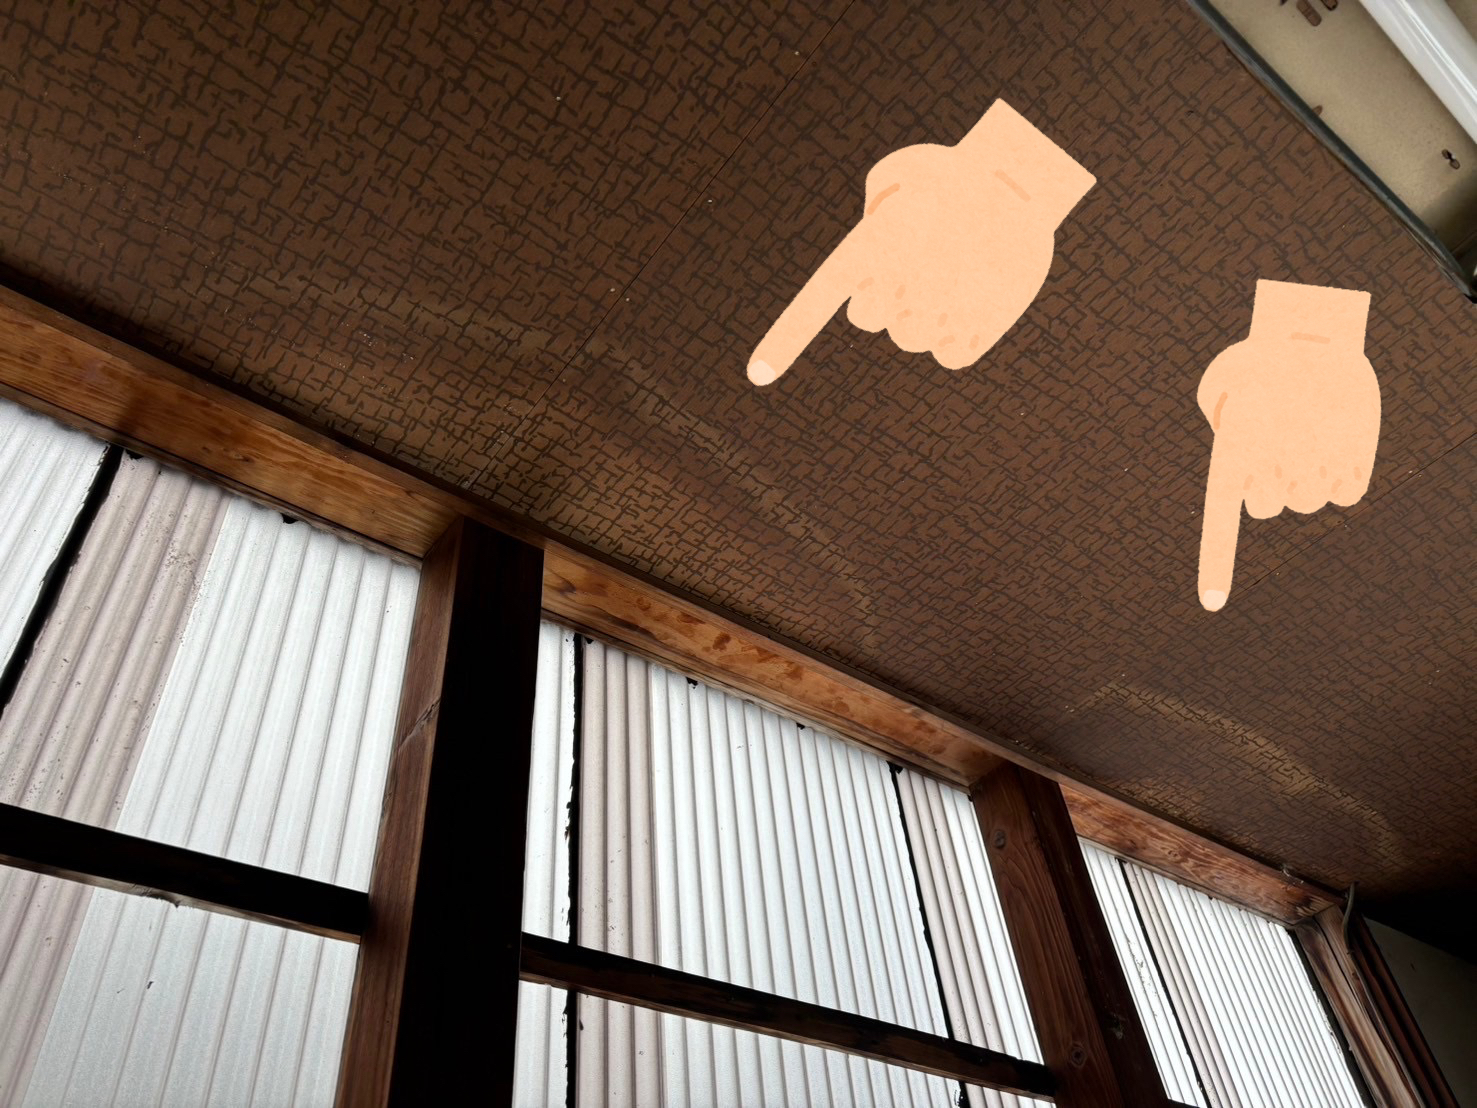 名古屋市守山区にて無料調査のご依頼。瓦のズレにより天井から雨漏りが発生していました